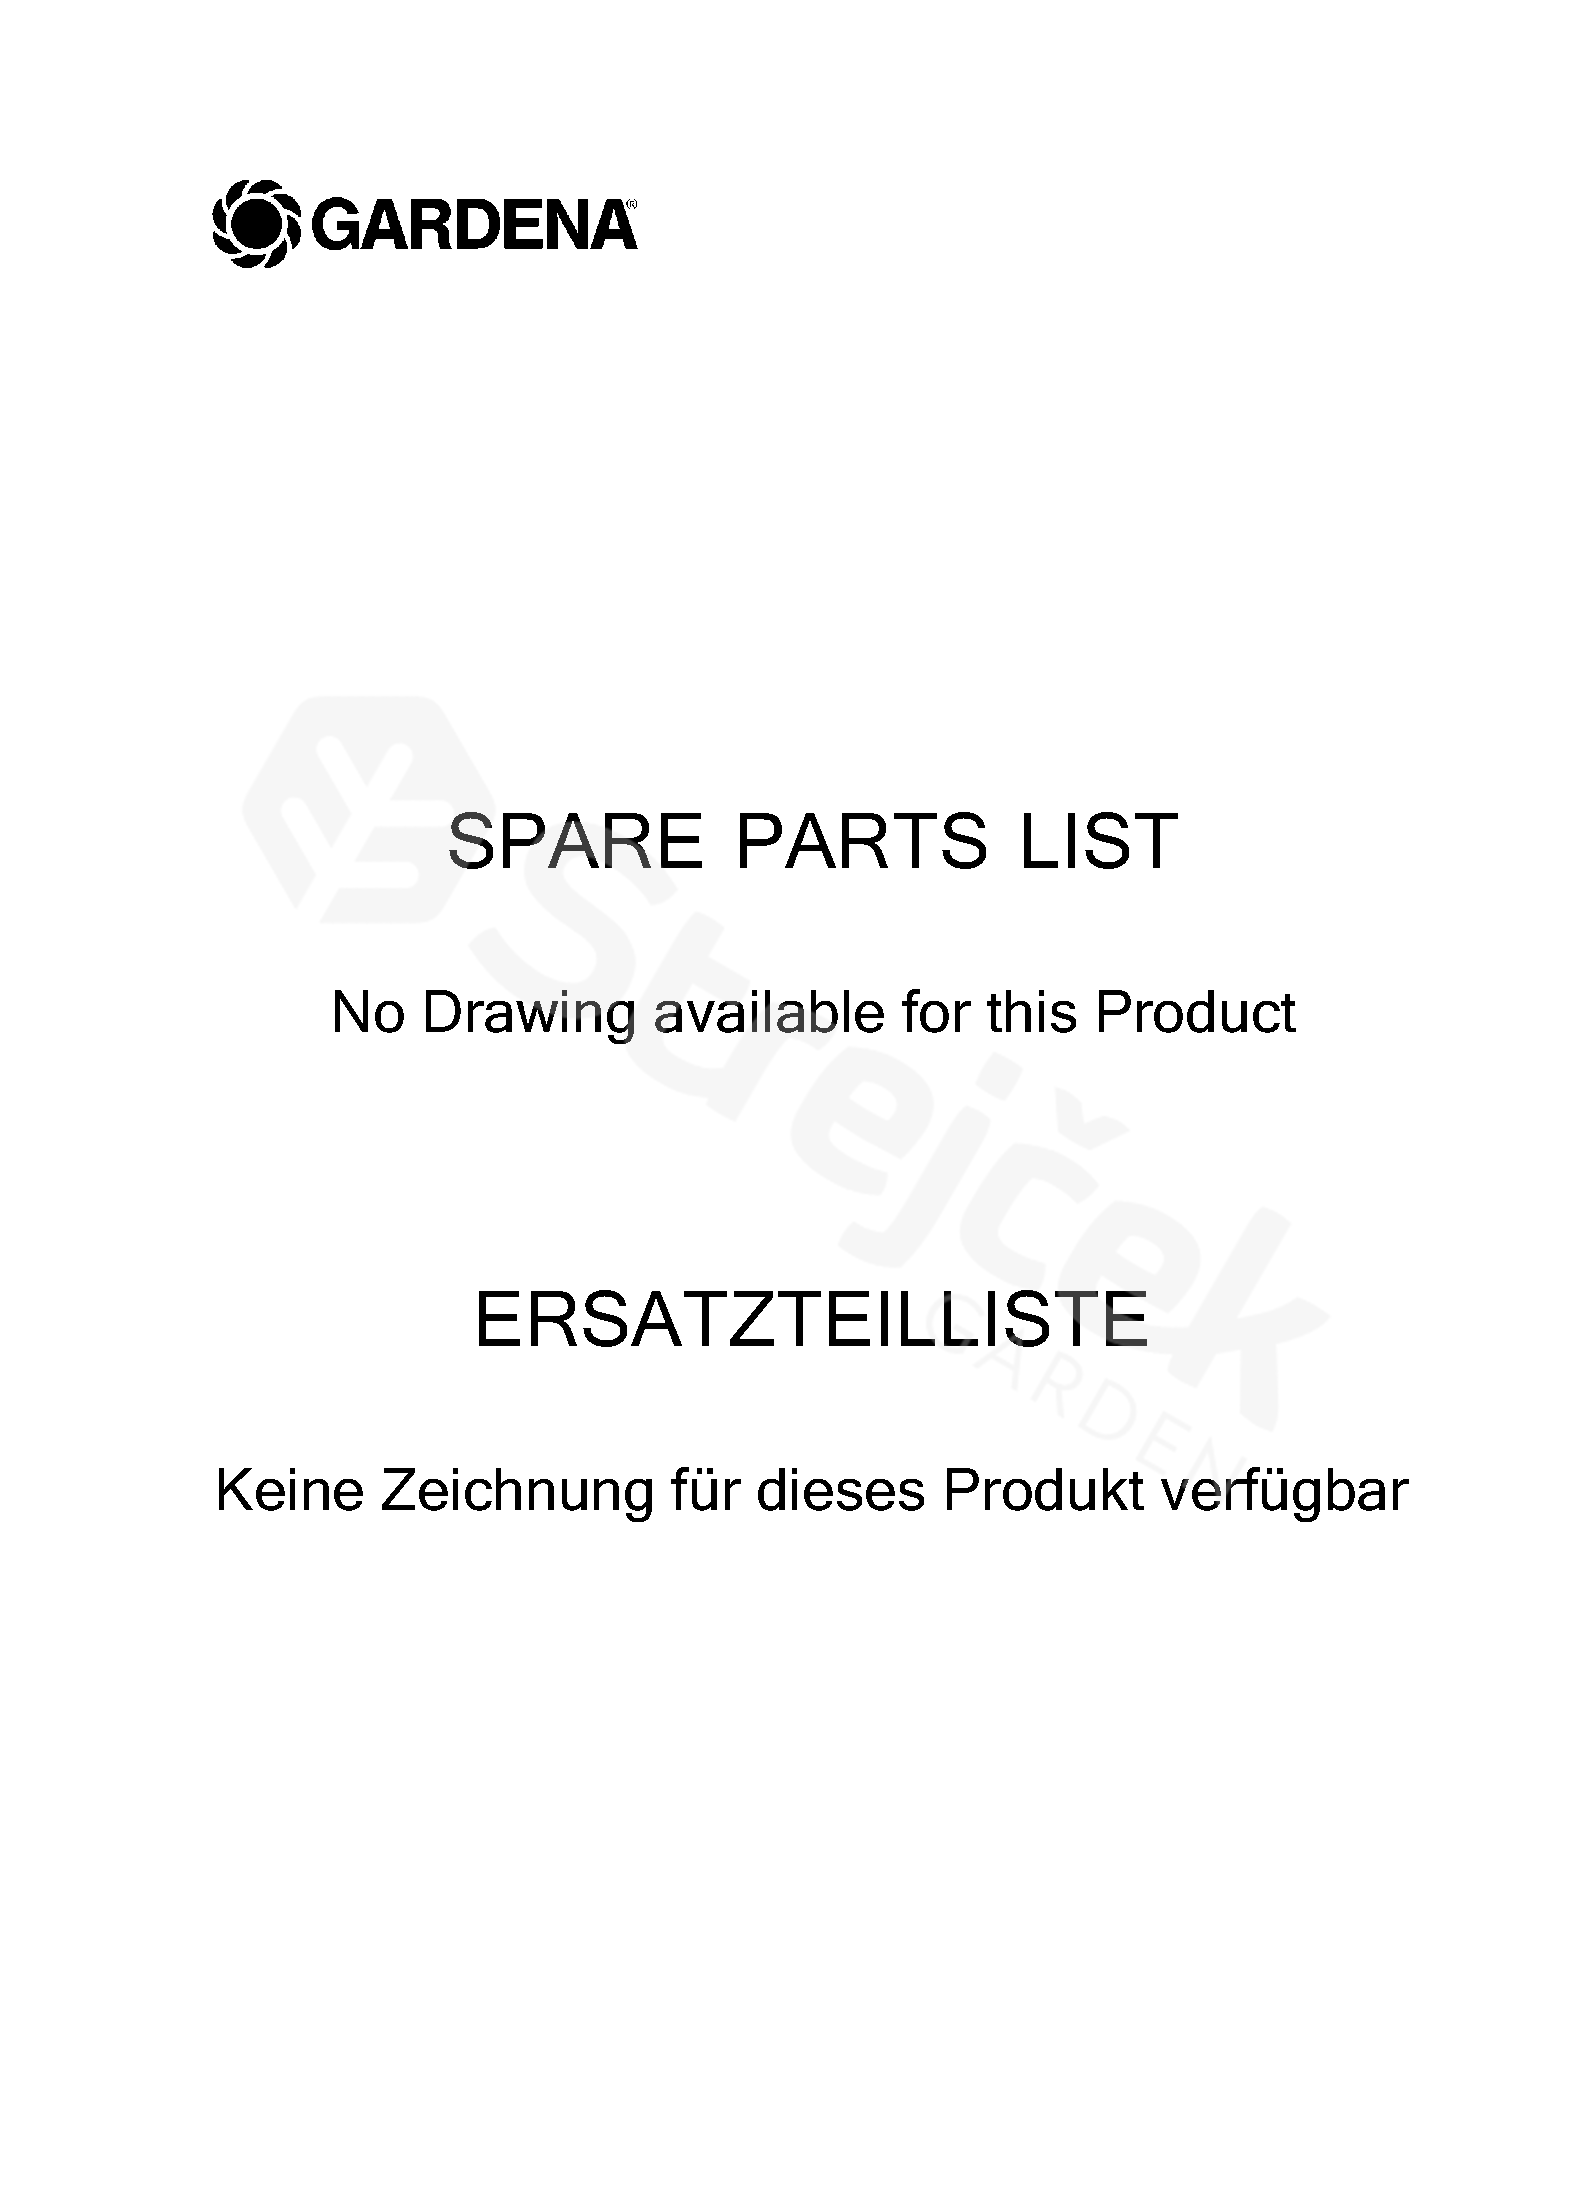 Spare Parts Partlist Oscillating Sprinkler Aquazoom M Oscillating Sprinkler Aquazoom M Product Complete Sgarden Cz